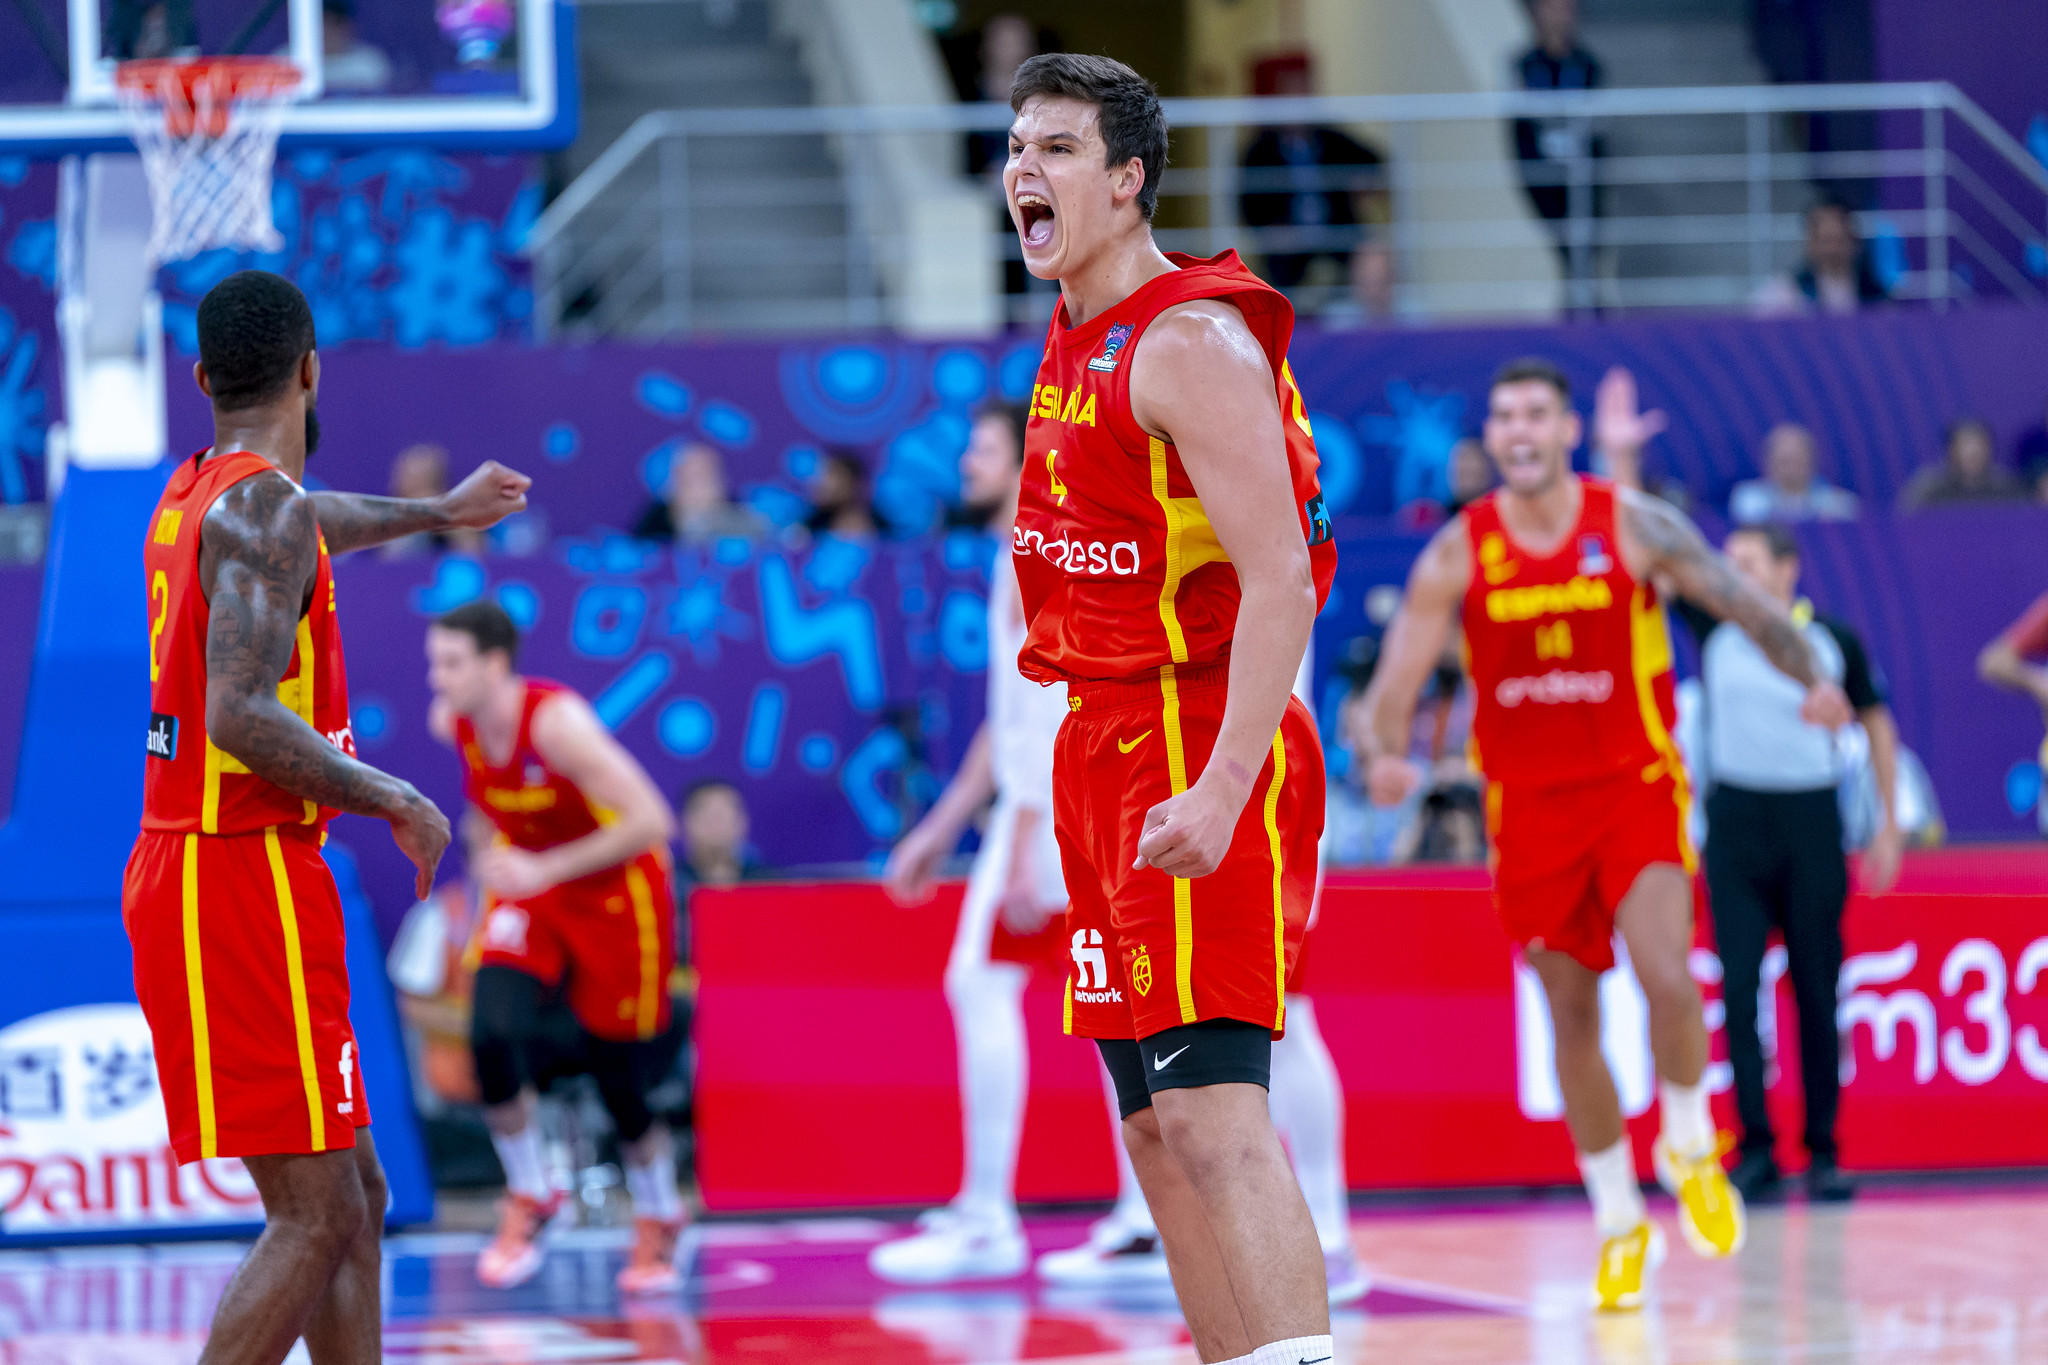 Jaime Pradilla, el "Felipe Reyes" que ha derribado la puerta la selección: "No tiene techo" | EuroBasket